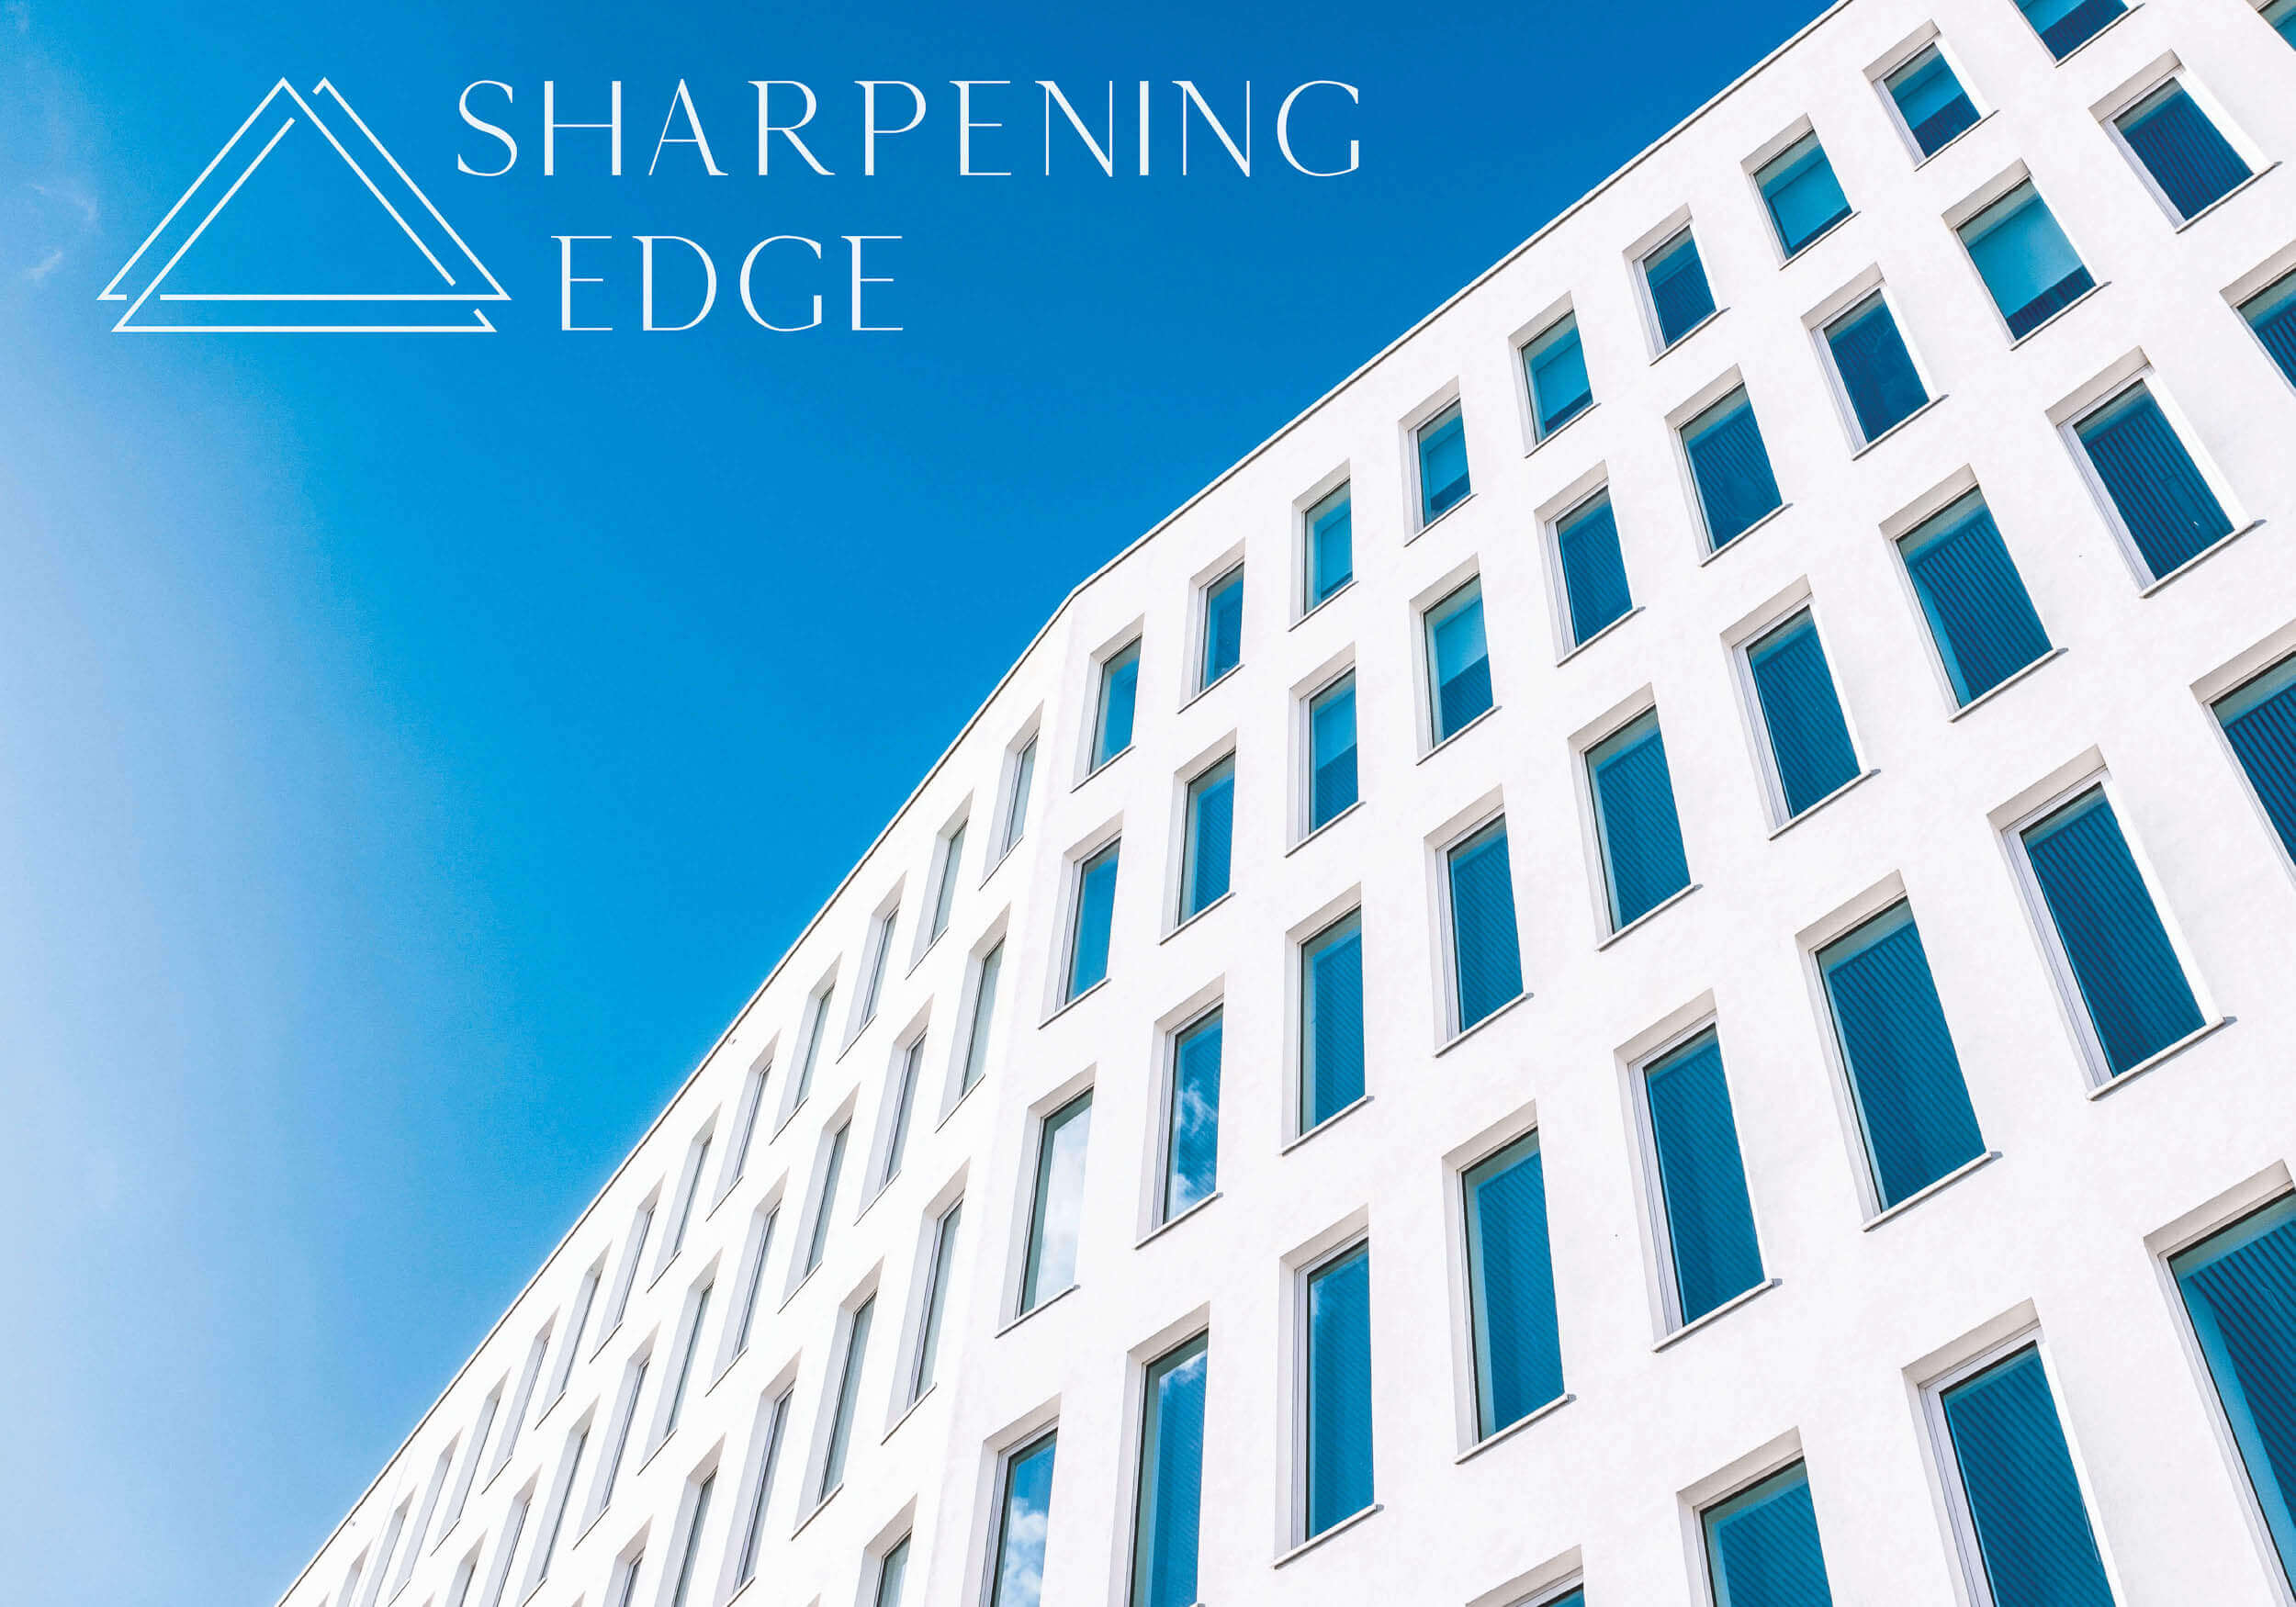 Logo aus dem Kommunikationsdesign für Sharpening Edge auf blauem Himmel über einem Gebäude